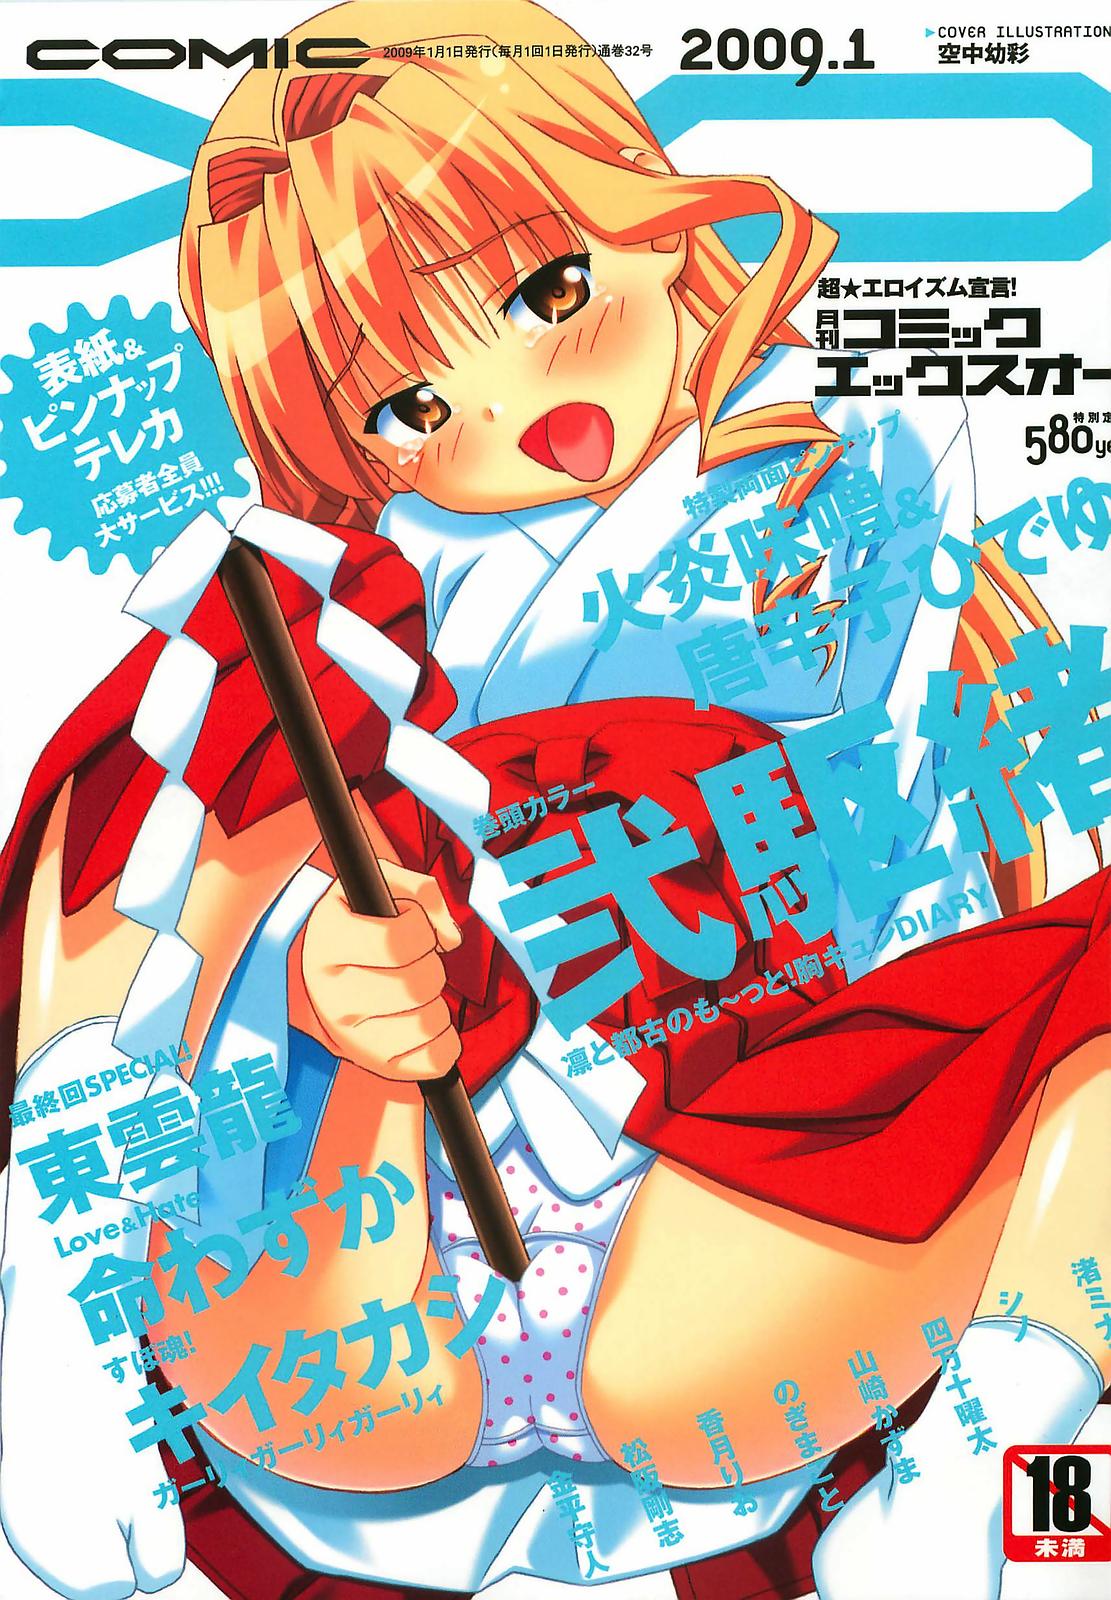 Read Kanehira Morihito Porn Comics Page 2 Of 6 Hentai Porns Manga And Porncomics Xxx 2 Hentai Comics